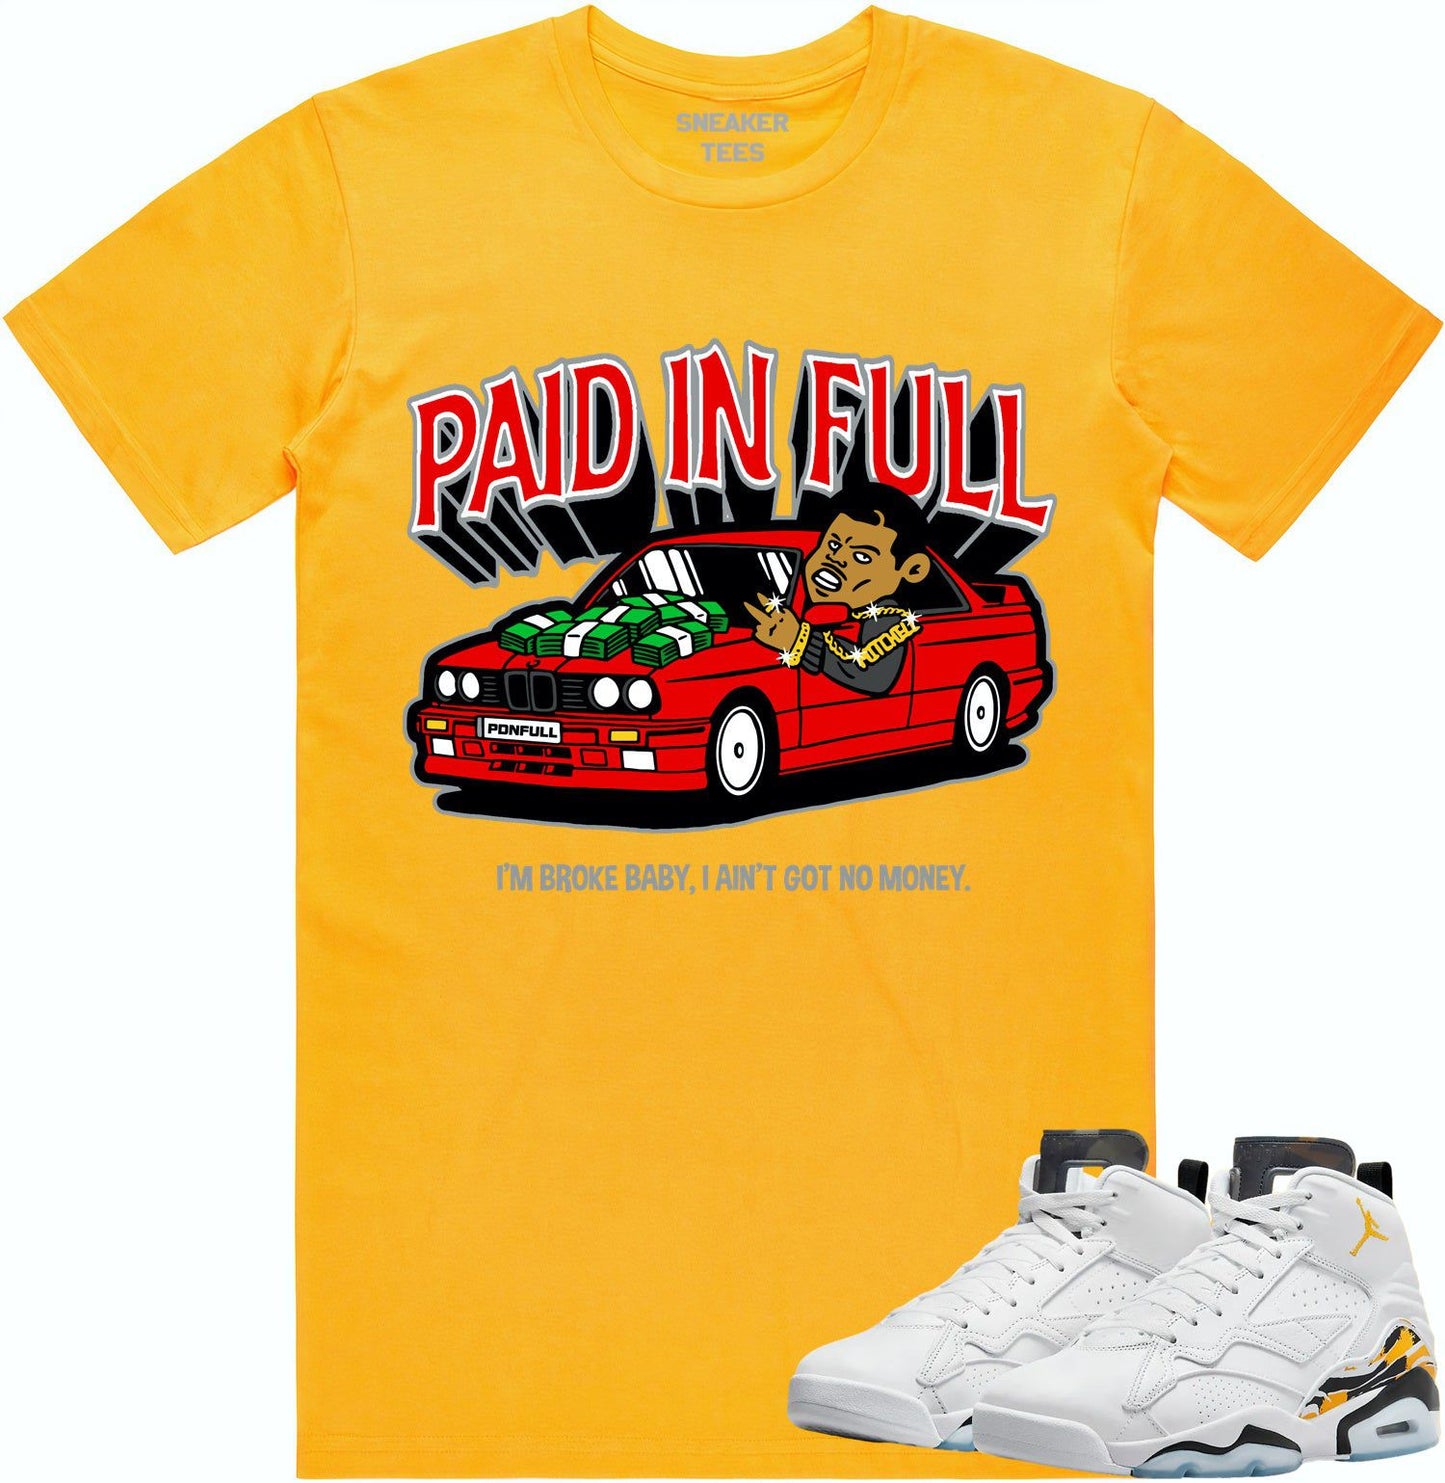 Jordan MVP 678 Yellow Ochre Shirt - Ochre Sneaker Tees - Red Paid